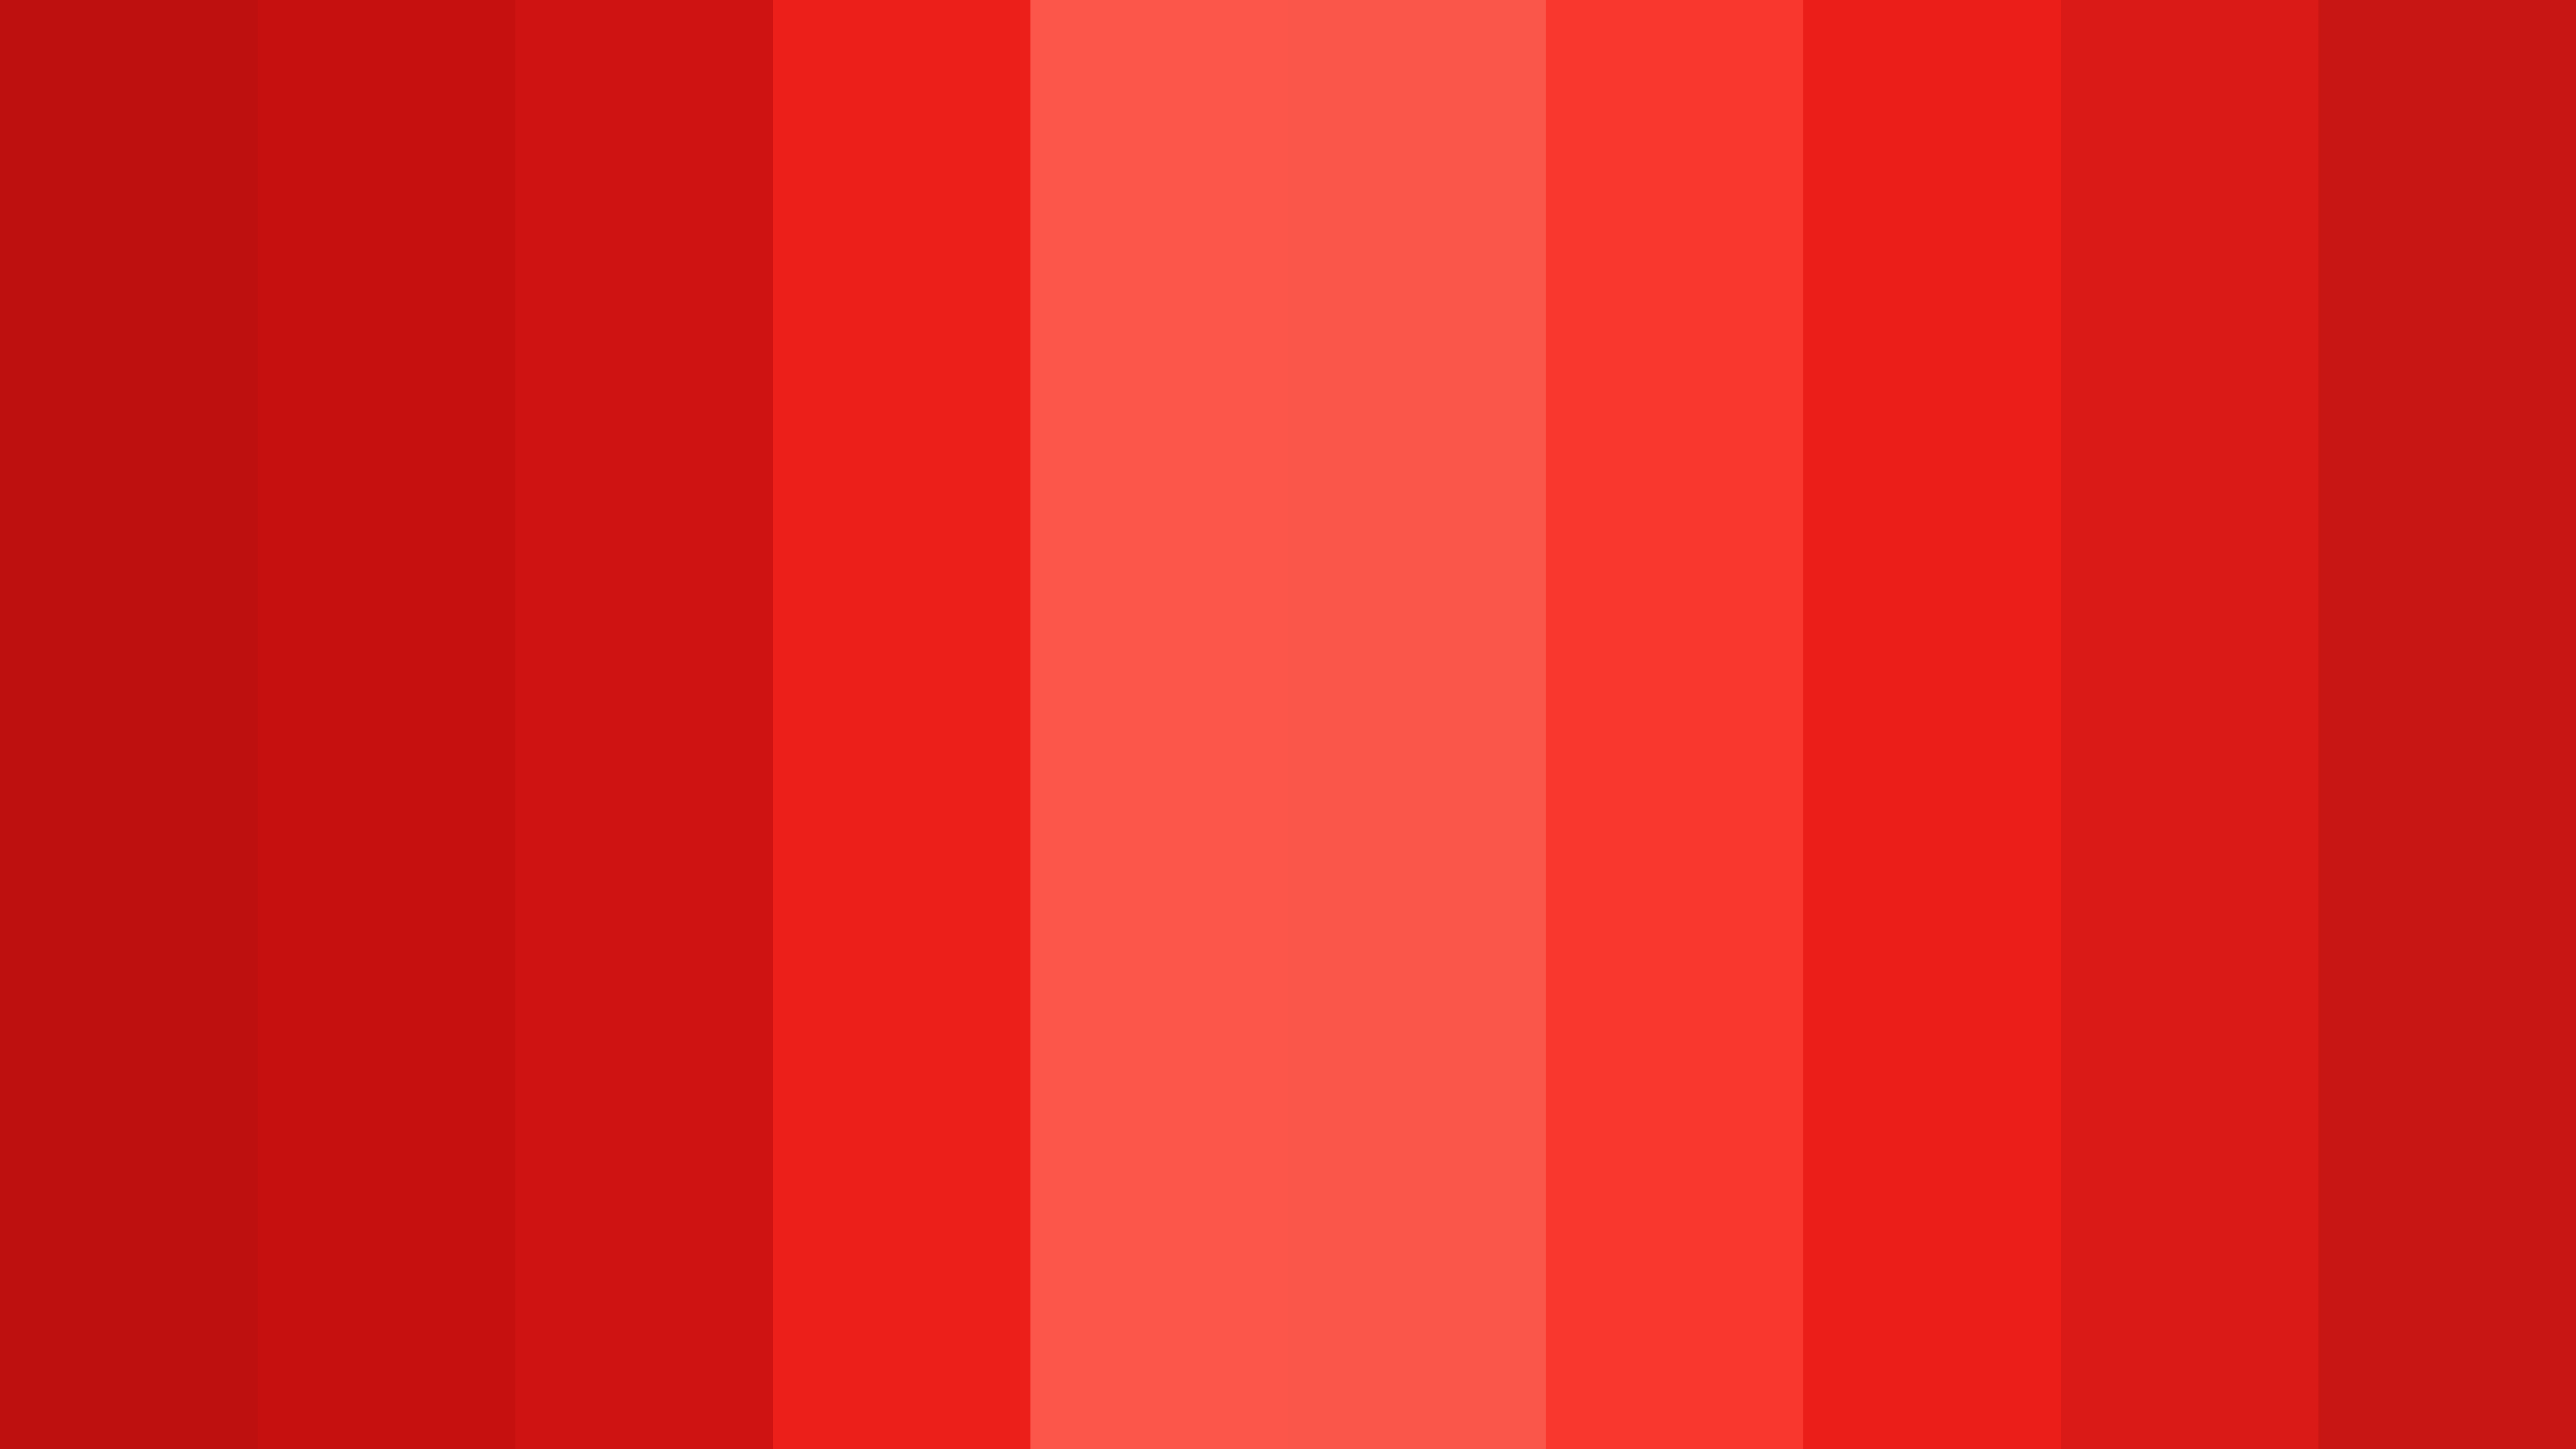 Red hex. #Ff00ff фуксия. Палитра красного цвета. Красный цвет темный. Оттенки бордового.